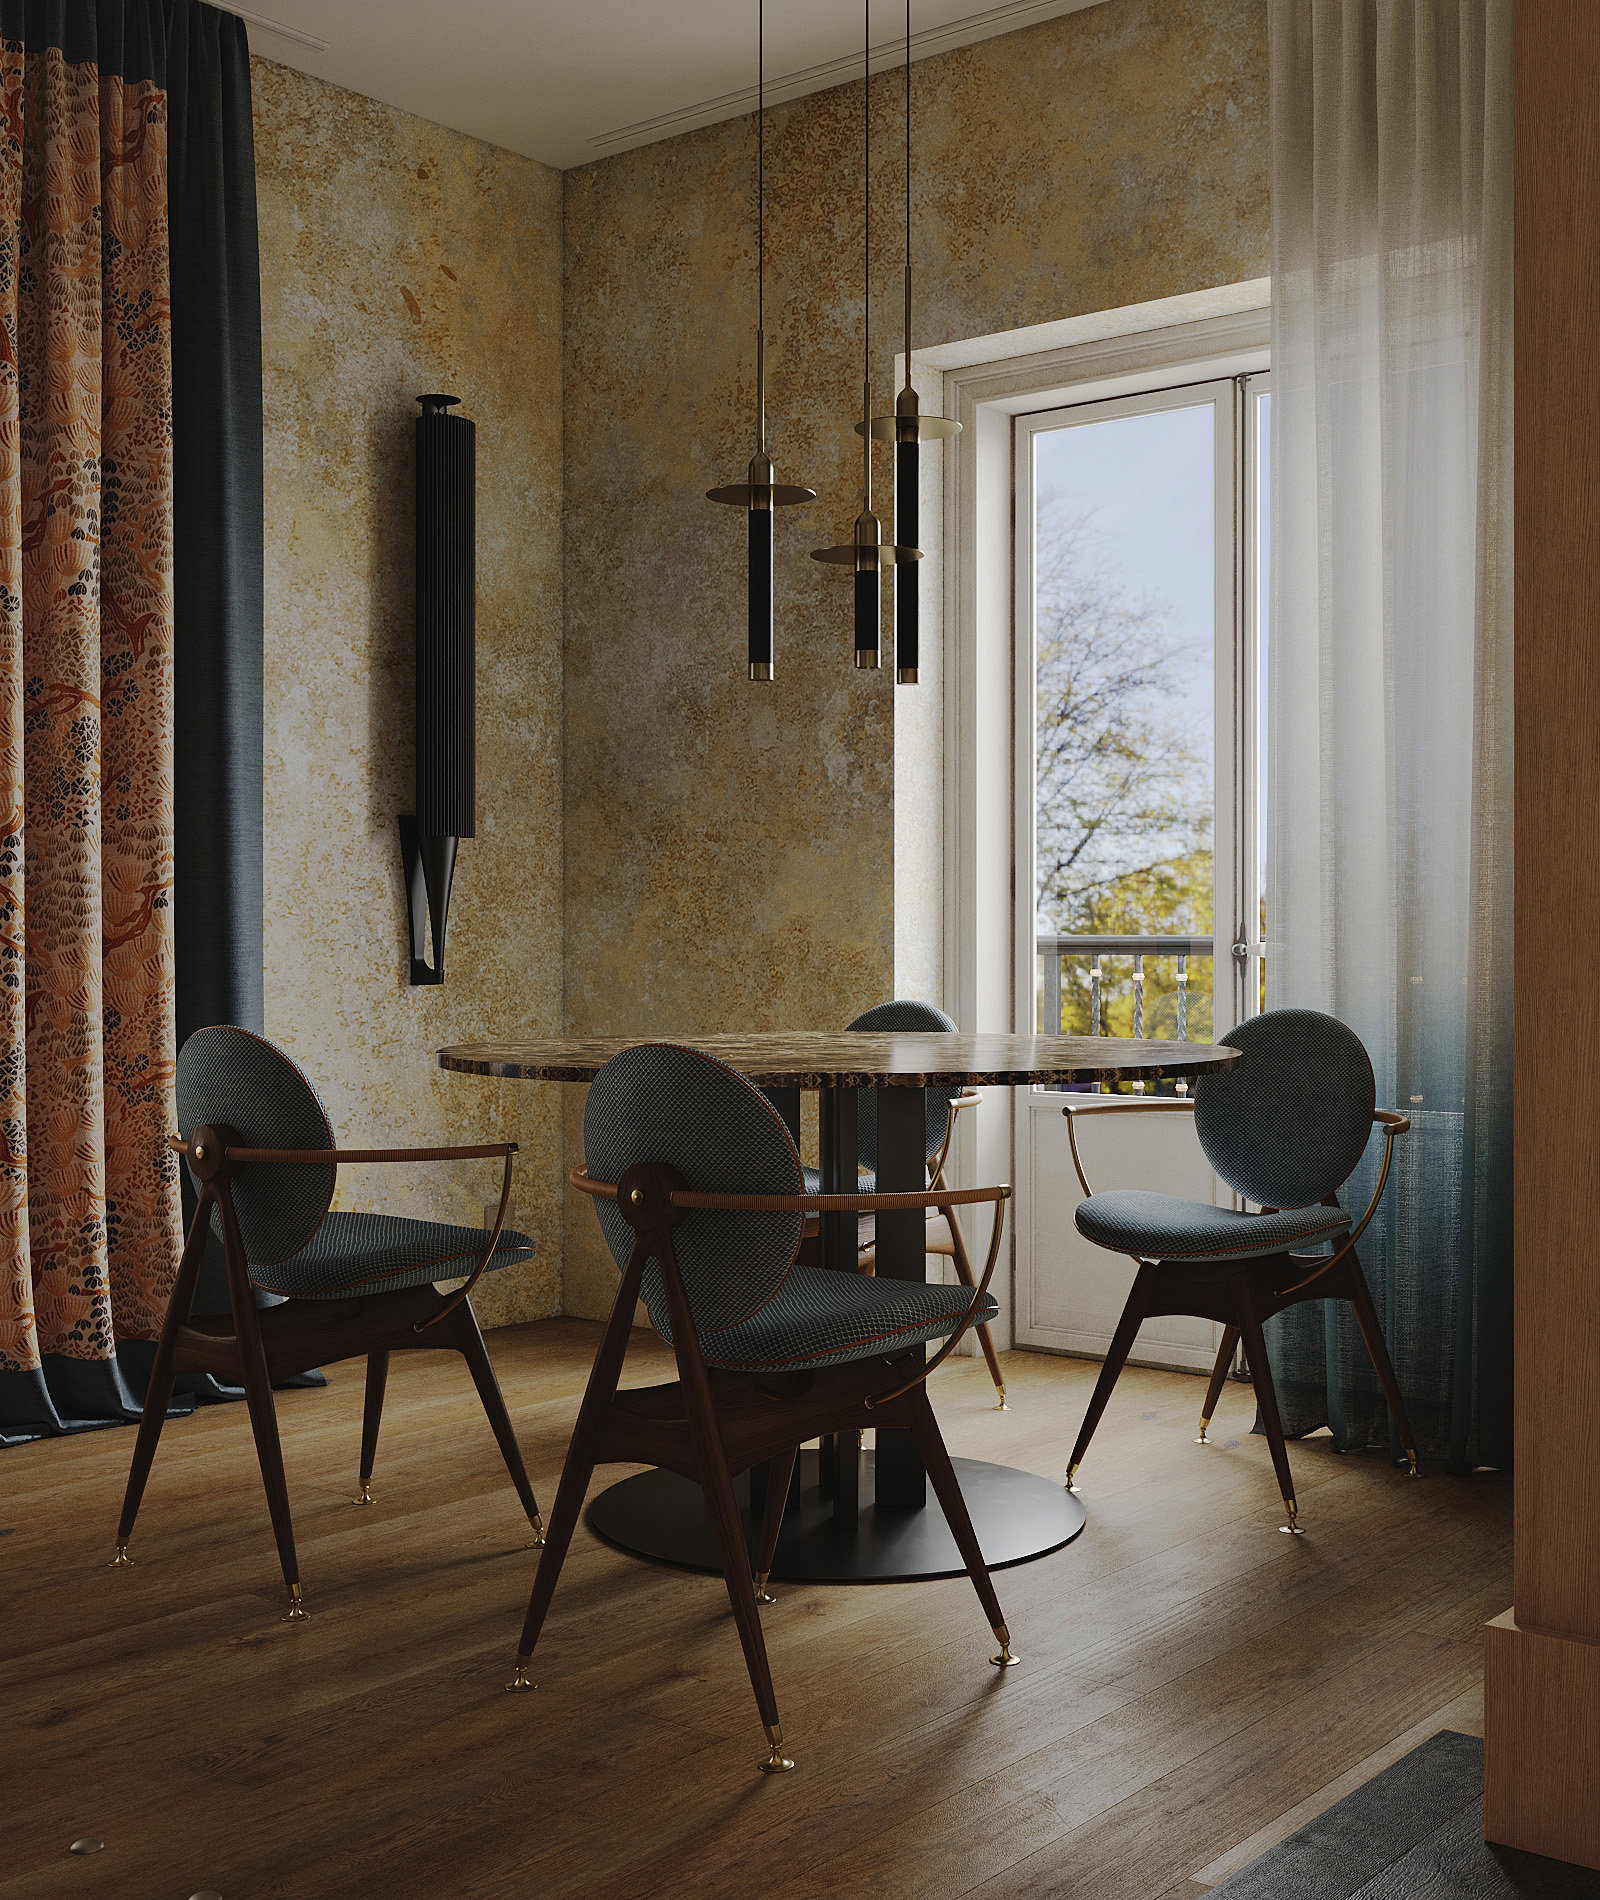 Las sillas Circle de Overgaard & Dyrman aportan un juego de geometrías y materiales: cada silla es altamente personalizable, con asiento y respaldo de cuero o tela, apoyabrazos de cordón de cuero o hilo de latón y estructura de roble o nogal. En la pared, a modo de escultura, el sistema de sonido Beolab 18 de Bang &Olufsen, en alumino negro.